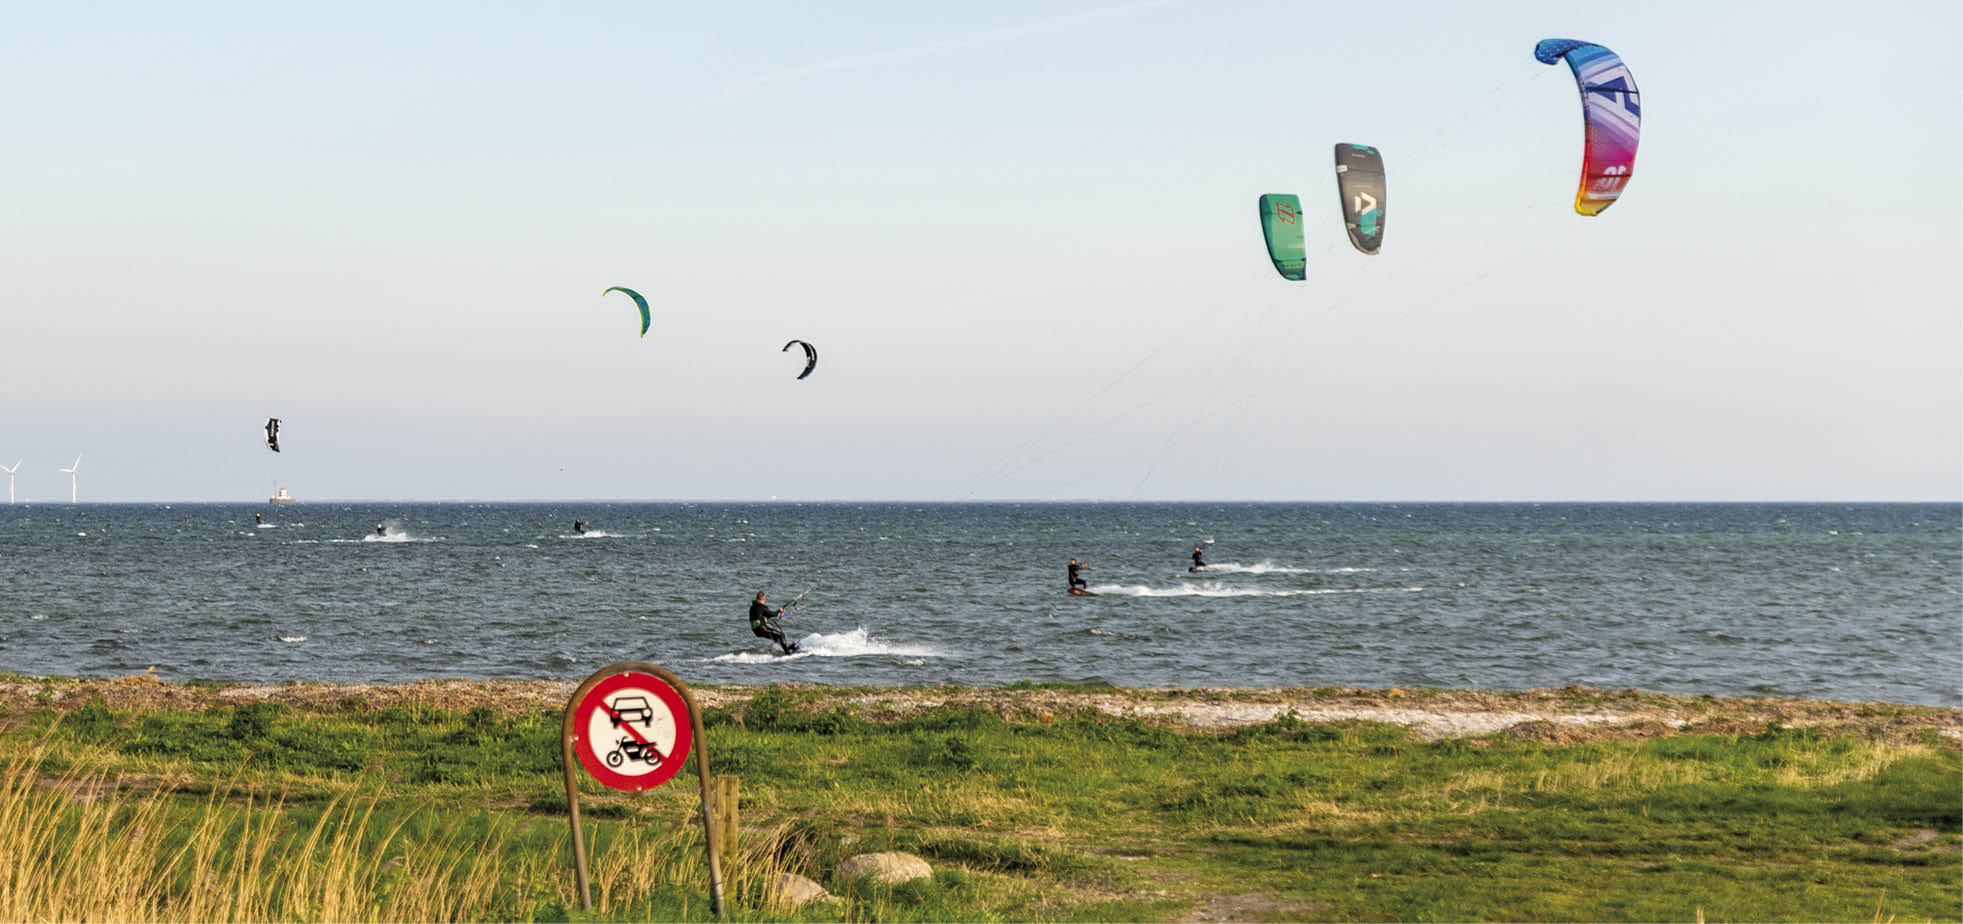 På Sydstranden ud for Sylten nyder kitesurferne forårets blæsevejr. Foto: HAS.